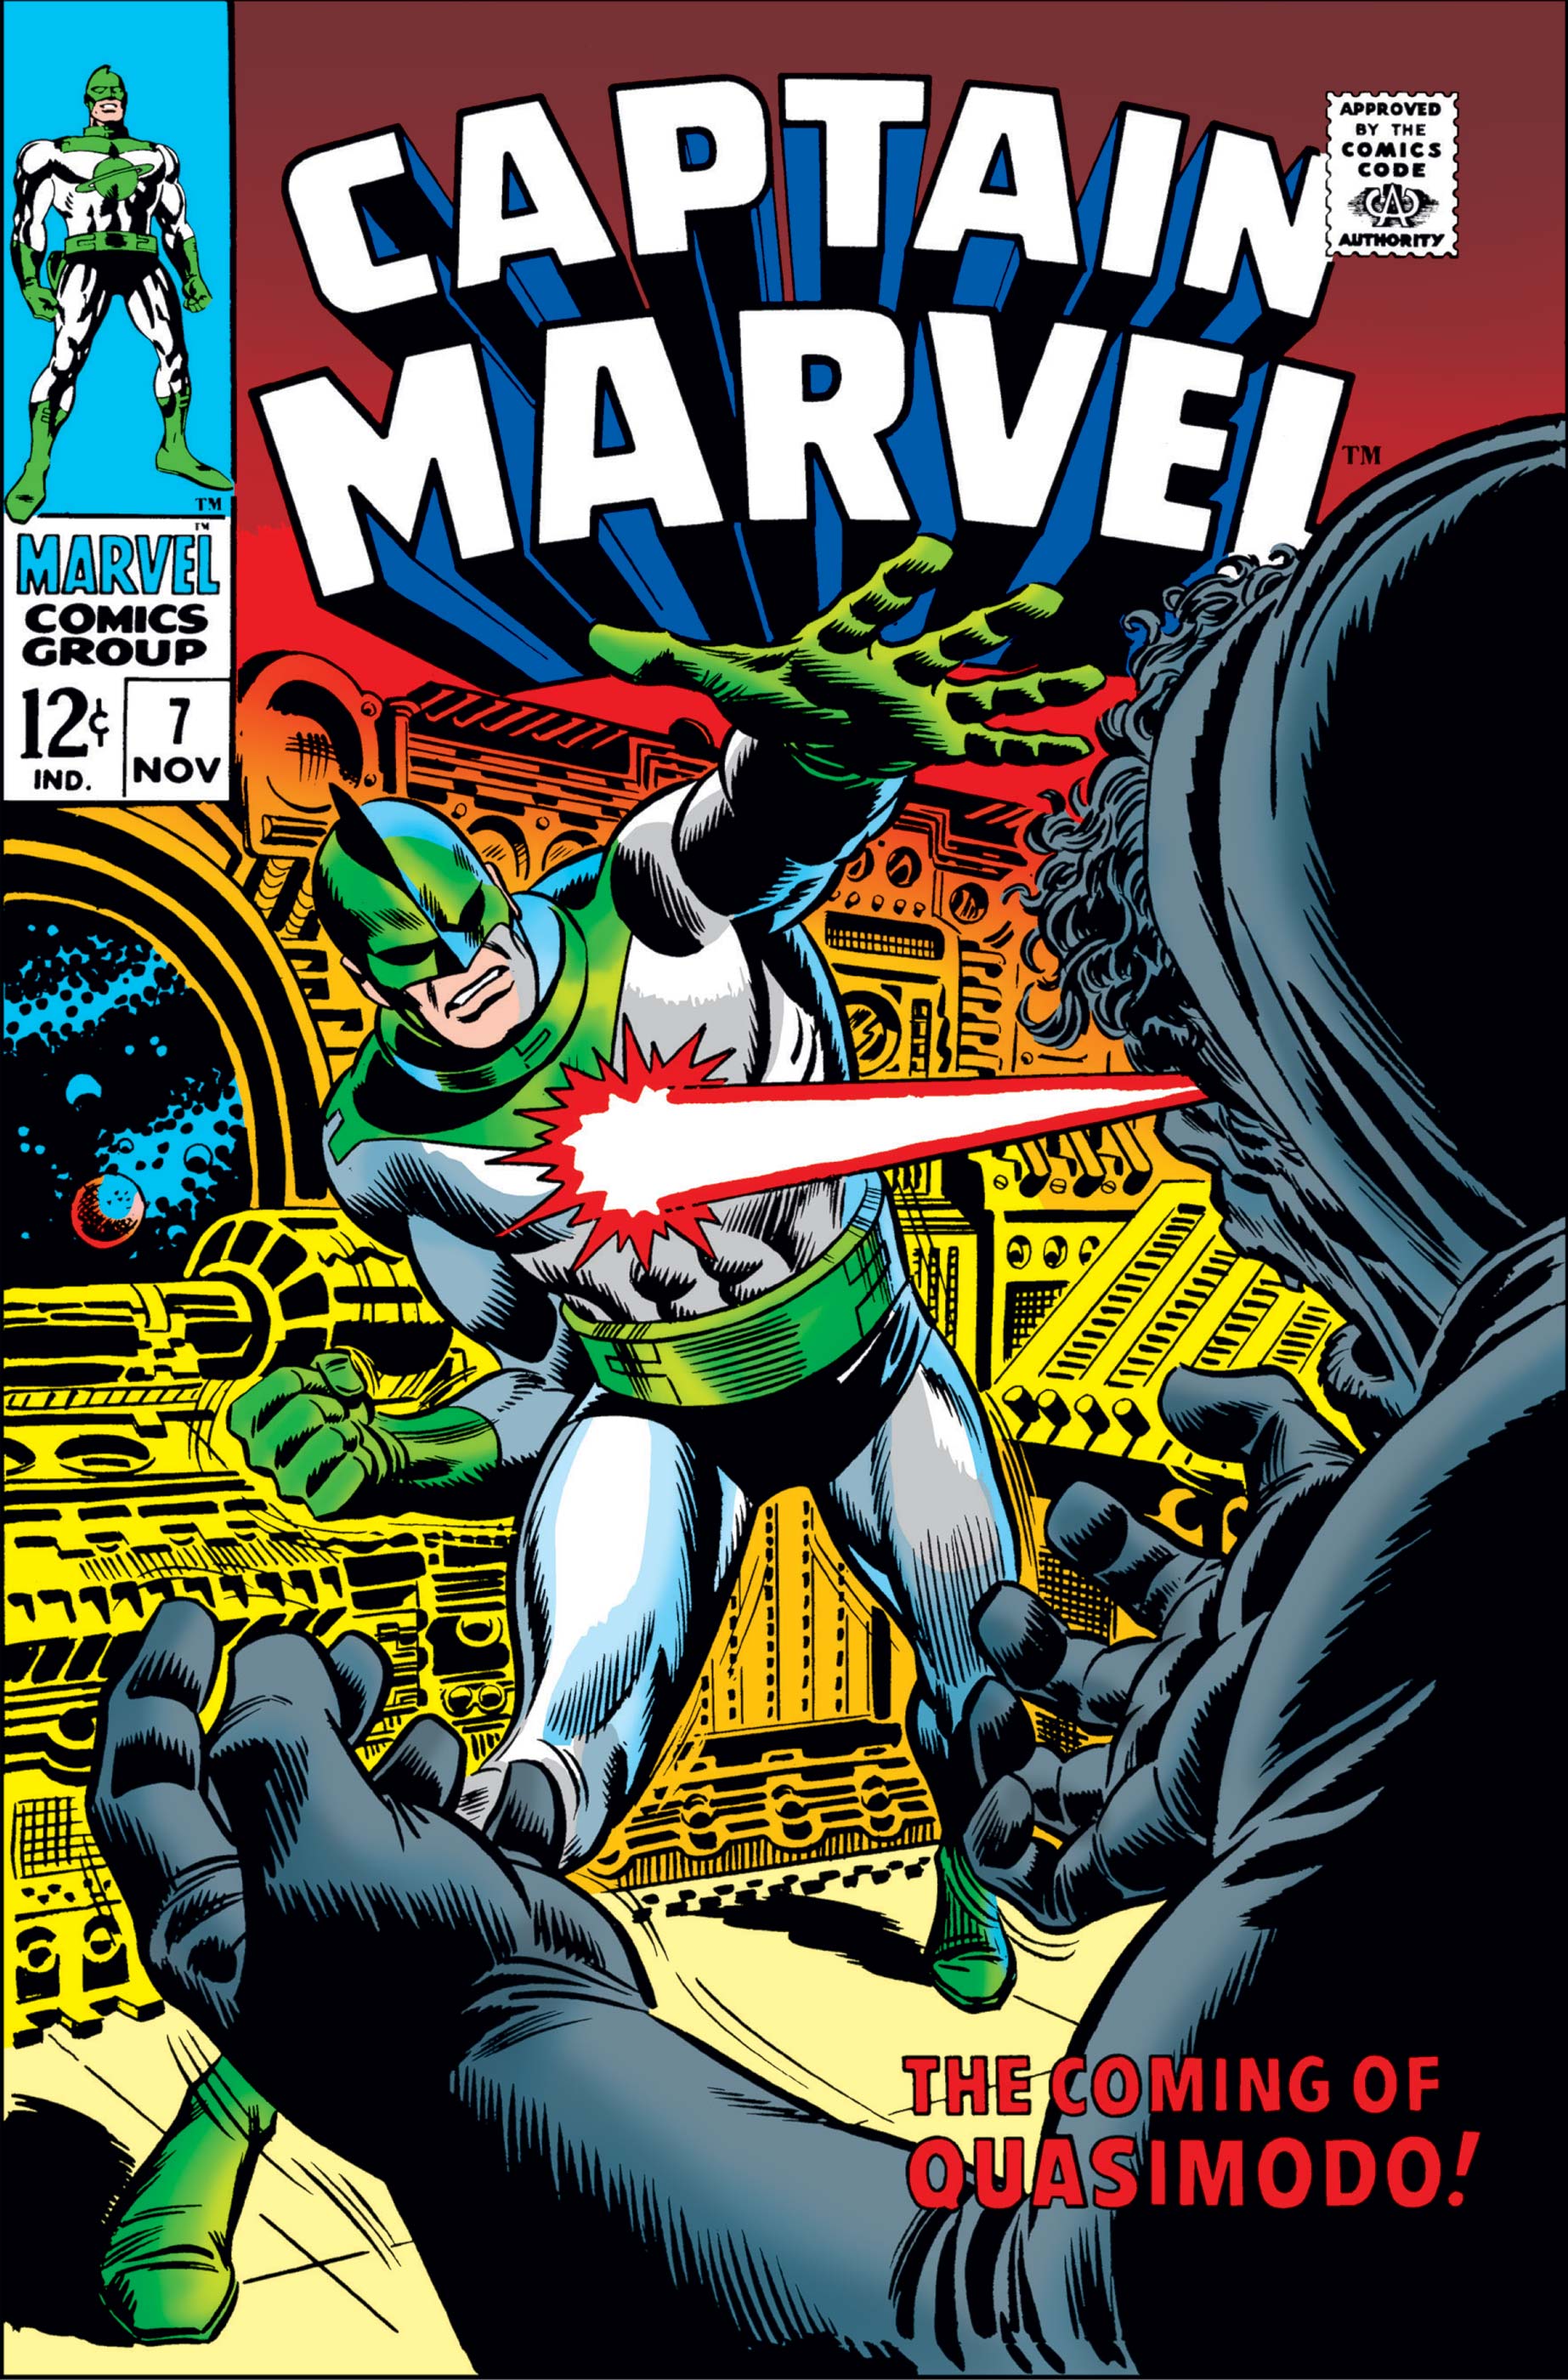 Captain Marvel (1968) #7